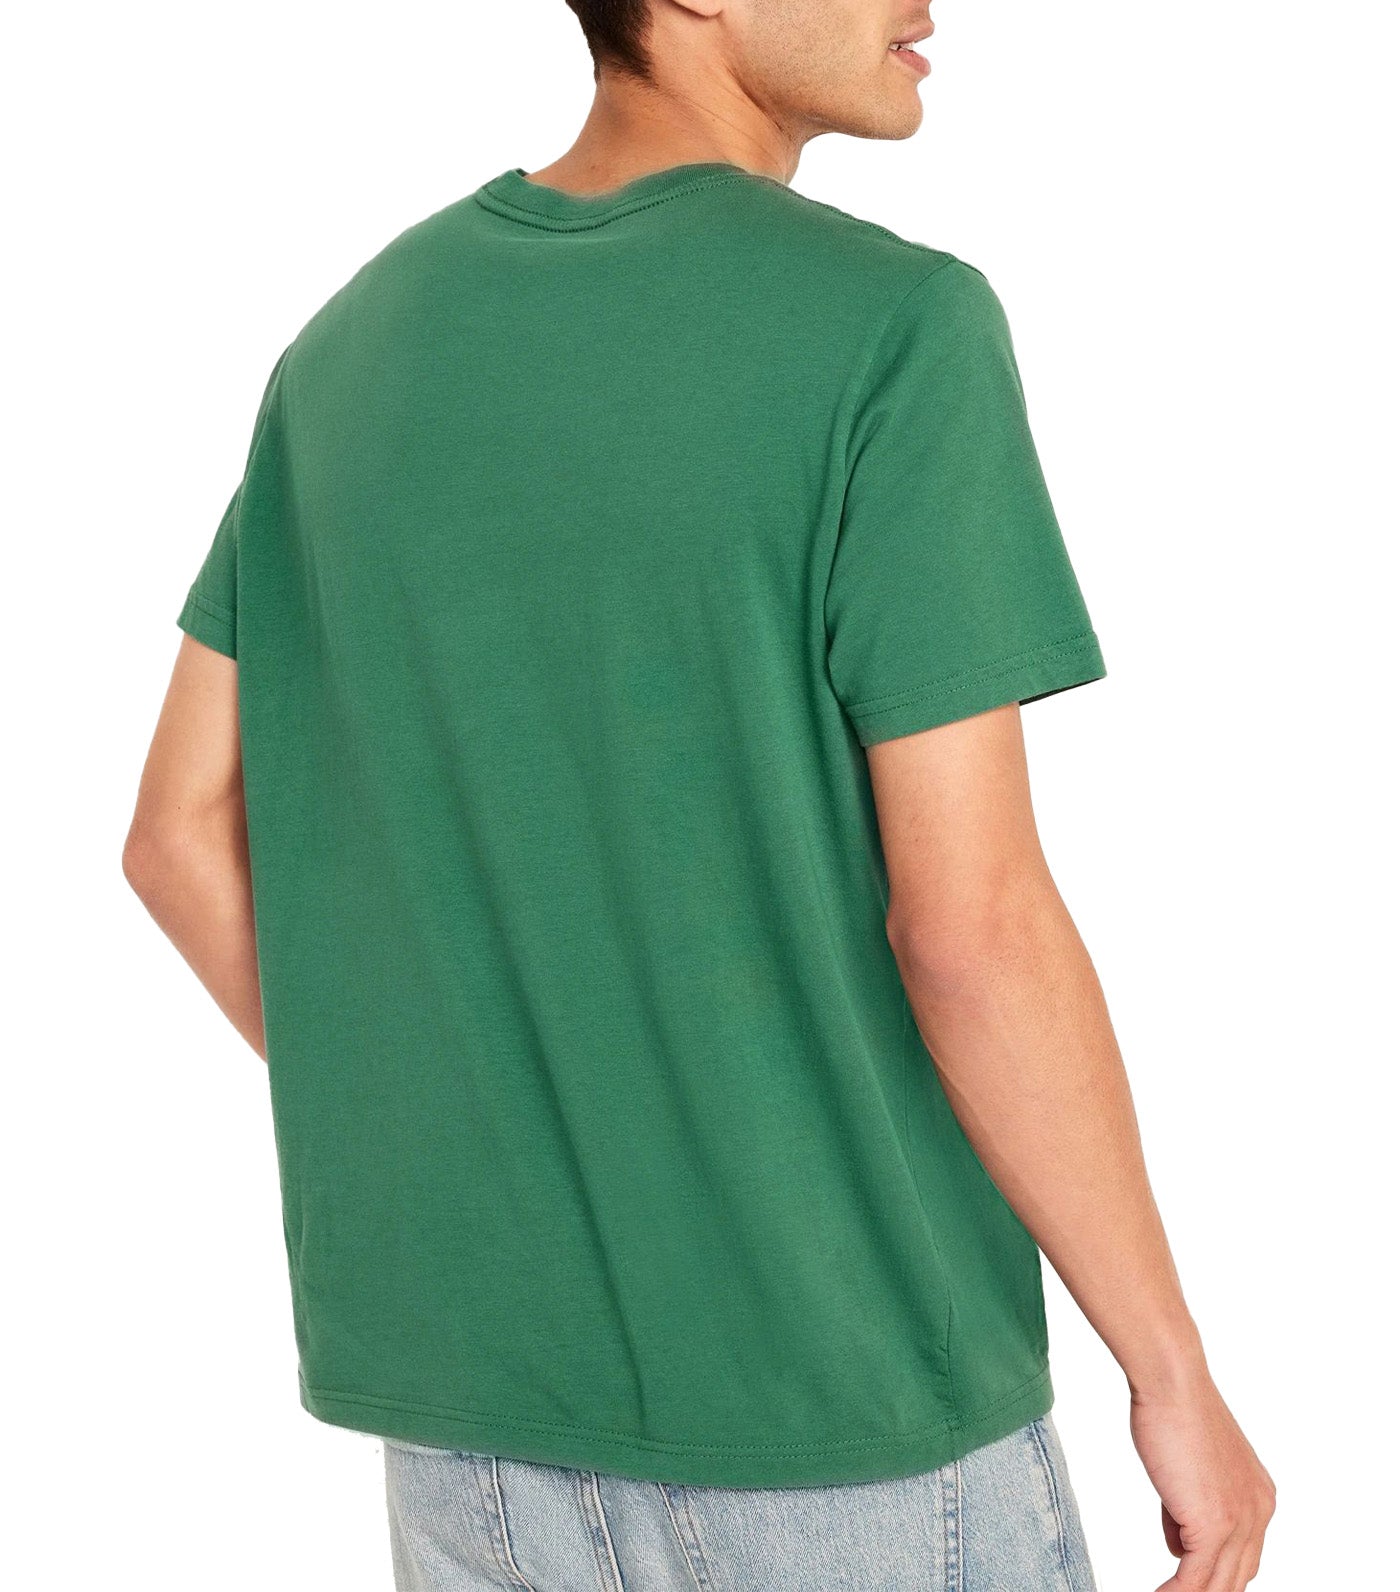 Crew-Neck T-Shirt for Men Balsam Fir Green